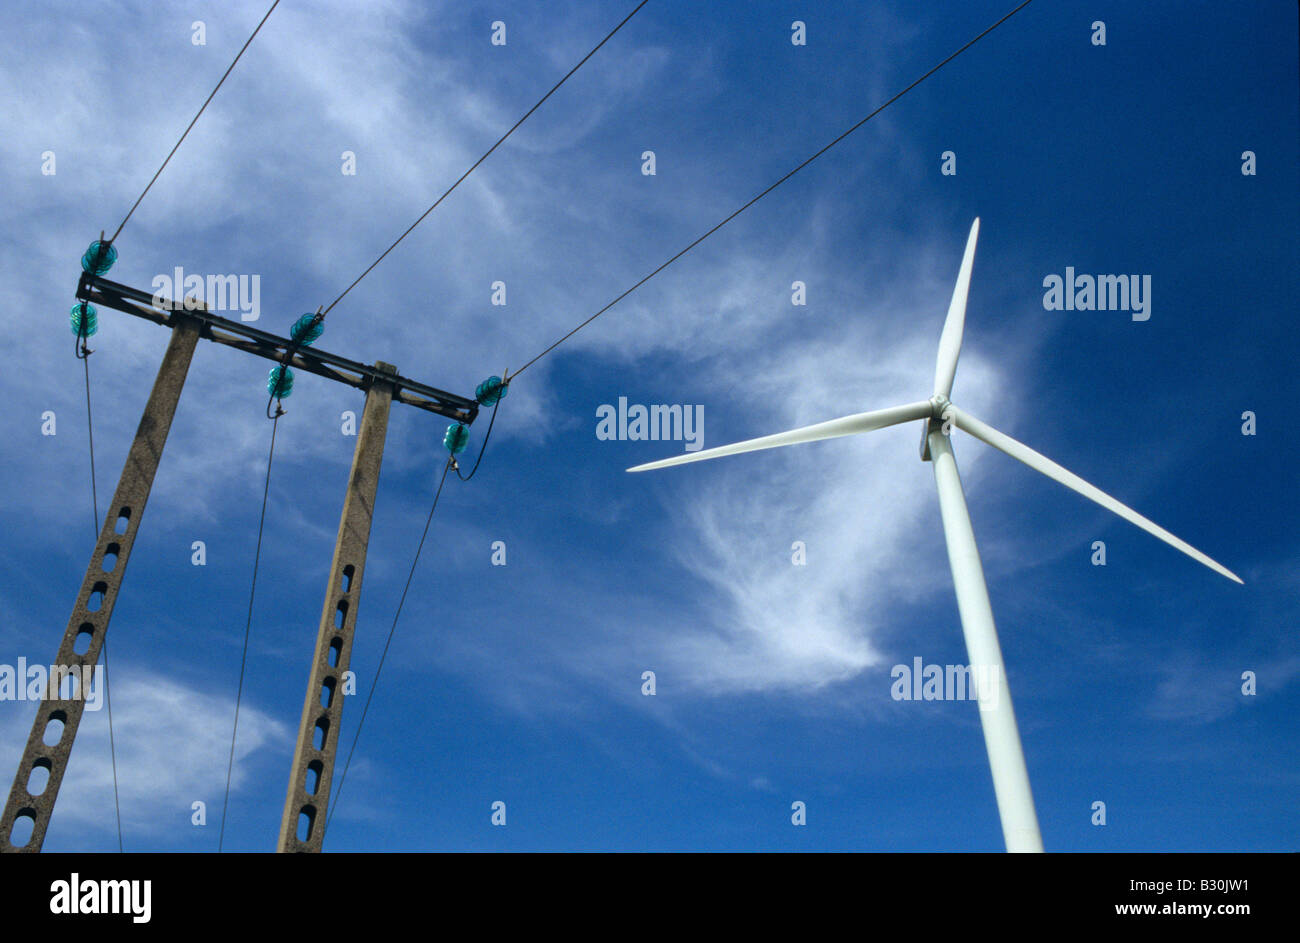 Eine Windturbine in der Nähe von elektrischen Pylon - Frankreich Stockfoto